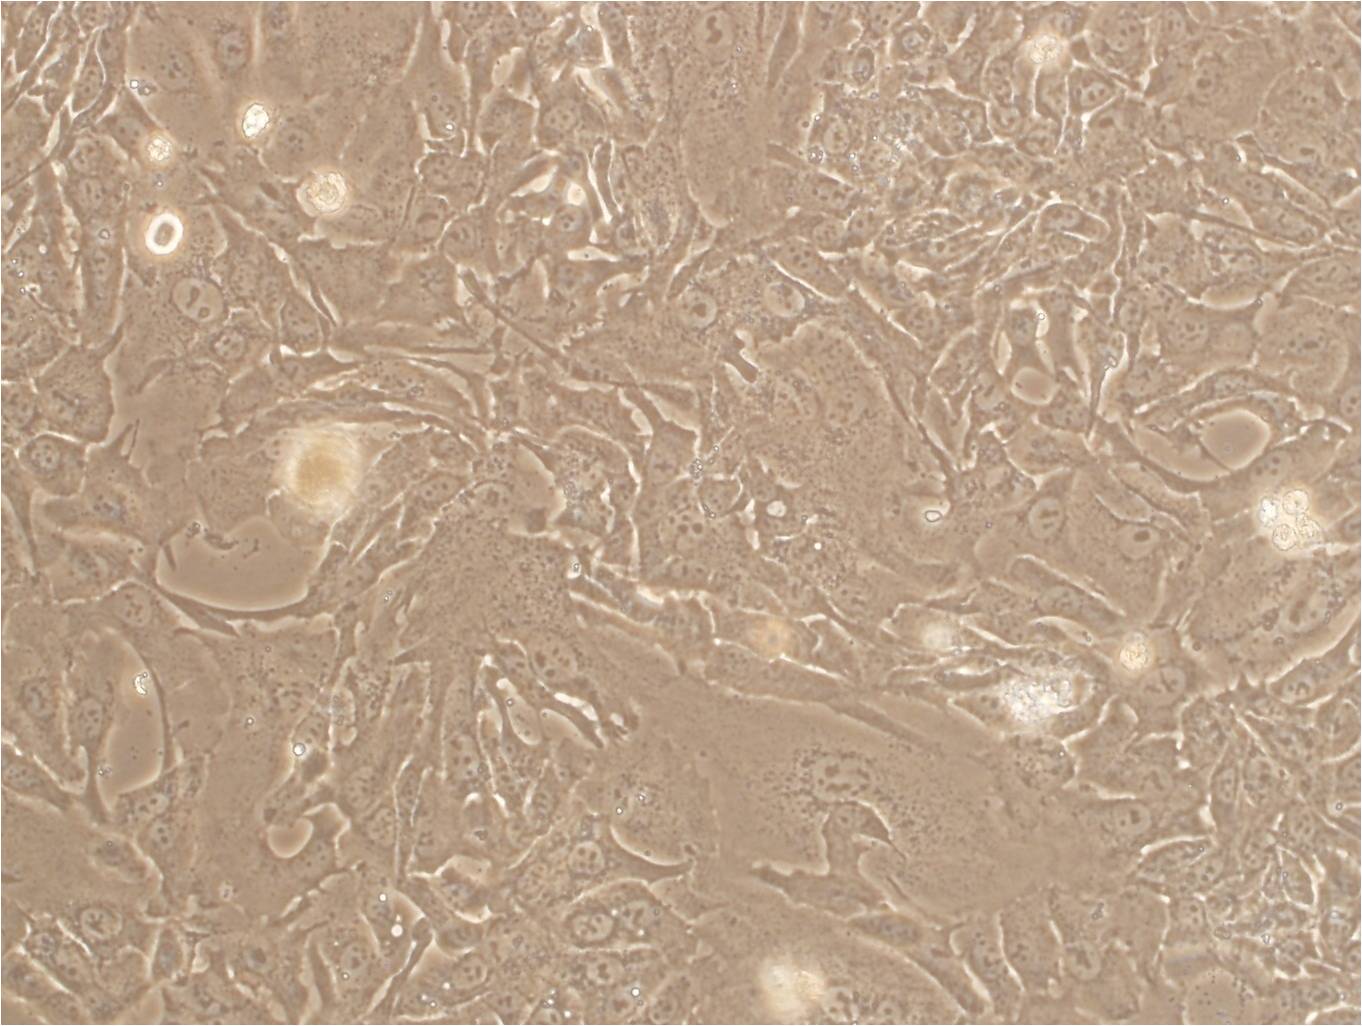 KOSC-2:人口腔鳞状癌复苏细胞(提供STR鉴定图谱)